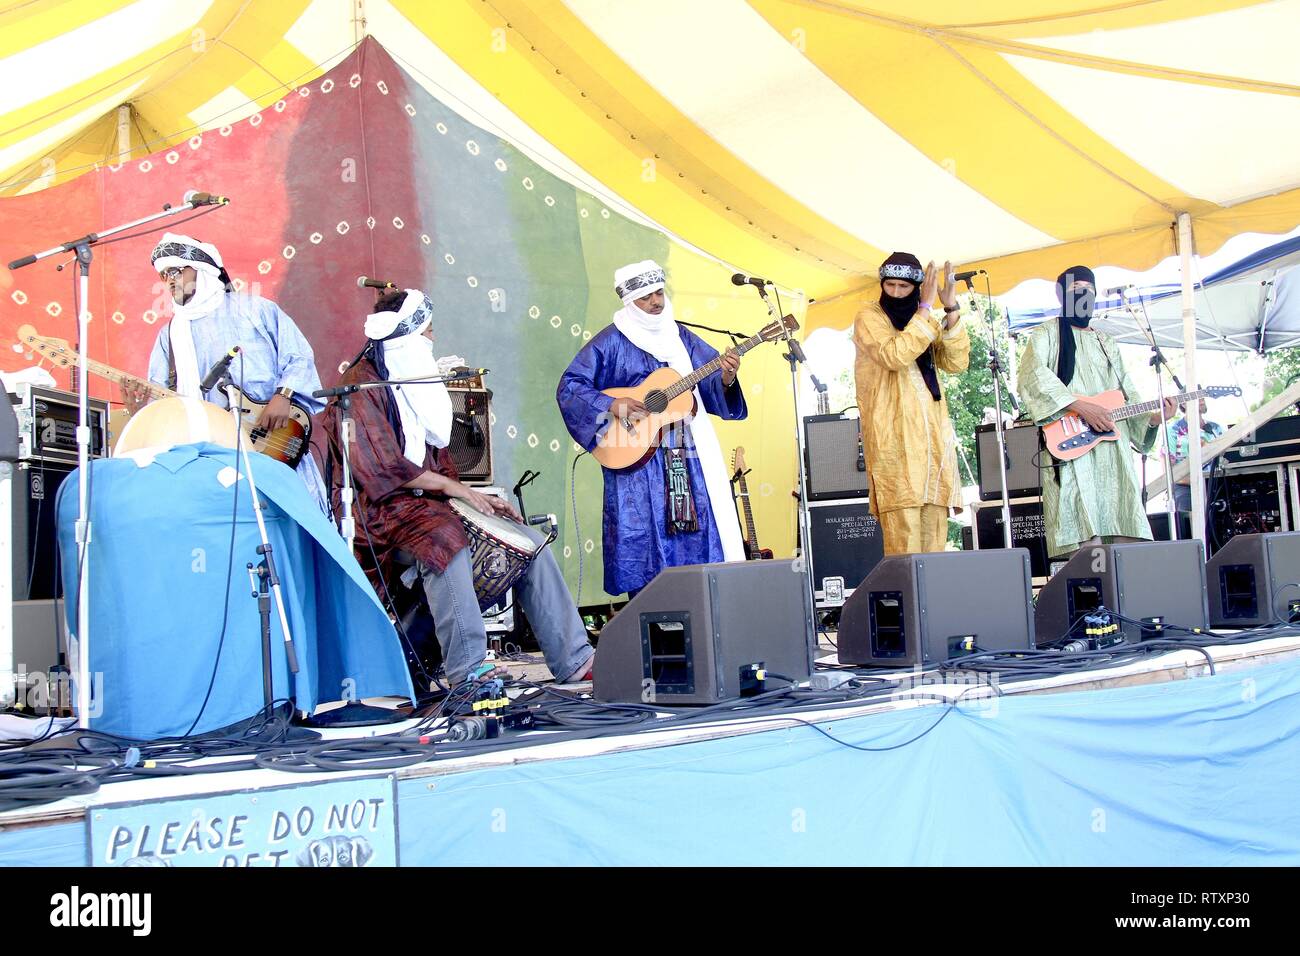 Tinariwen, una band di musicisti Tuareg-Berber dal deserto del Sahara regione del nord Mali, sono mostrati esibirsi sul palco durante un 'live' aspetto di concerto. Foto Stock